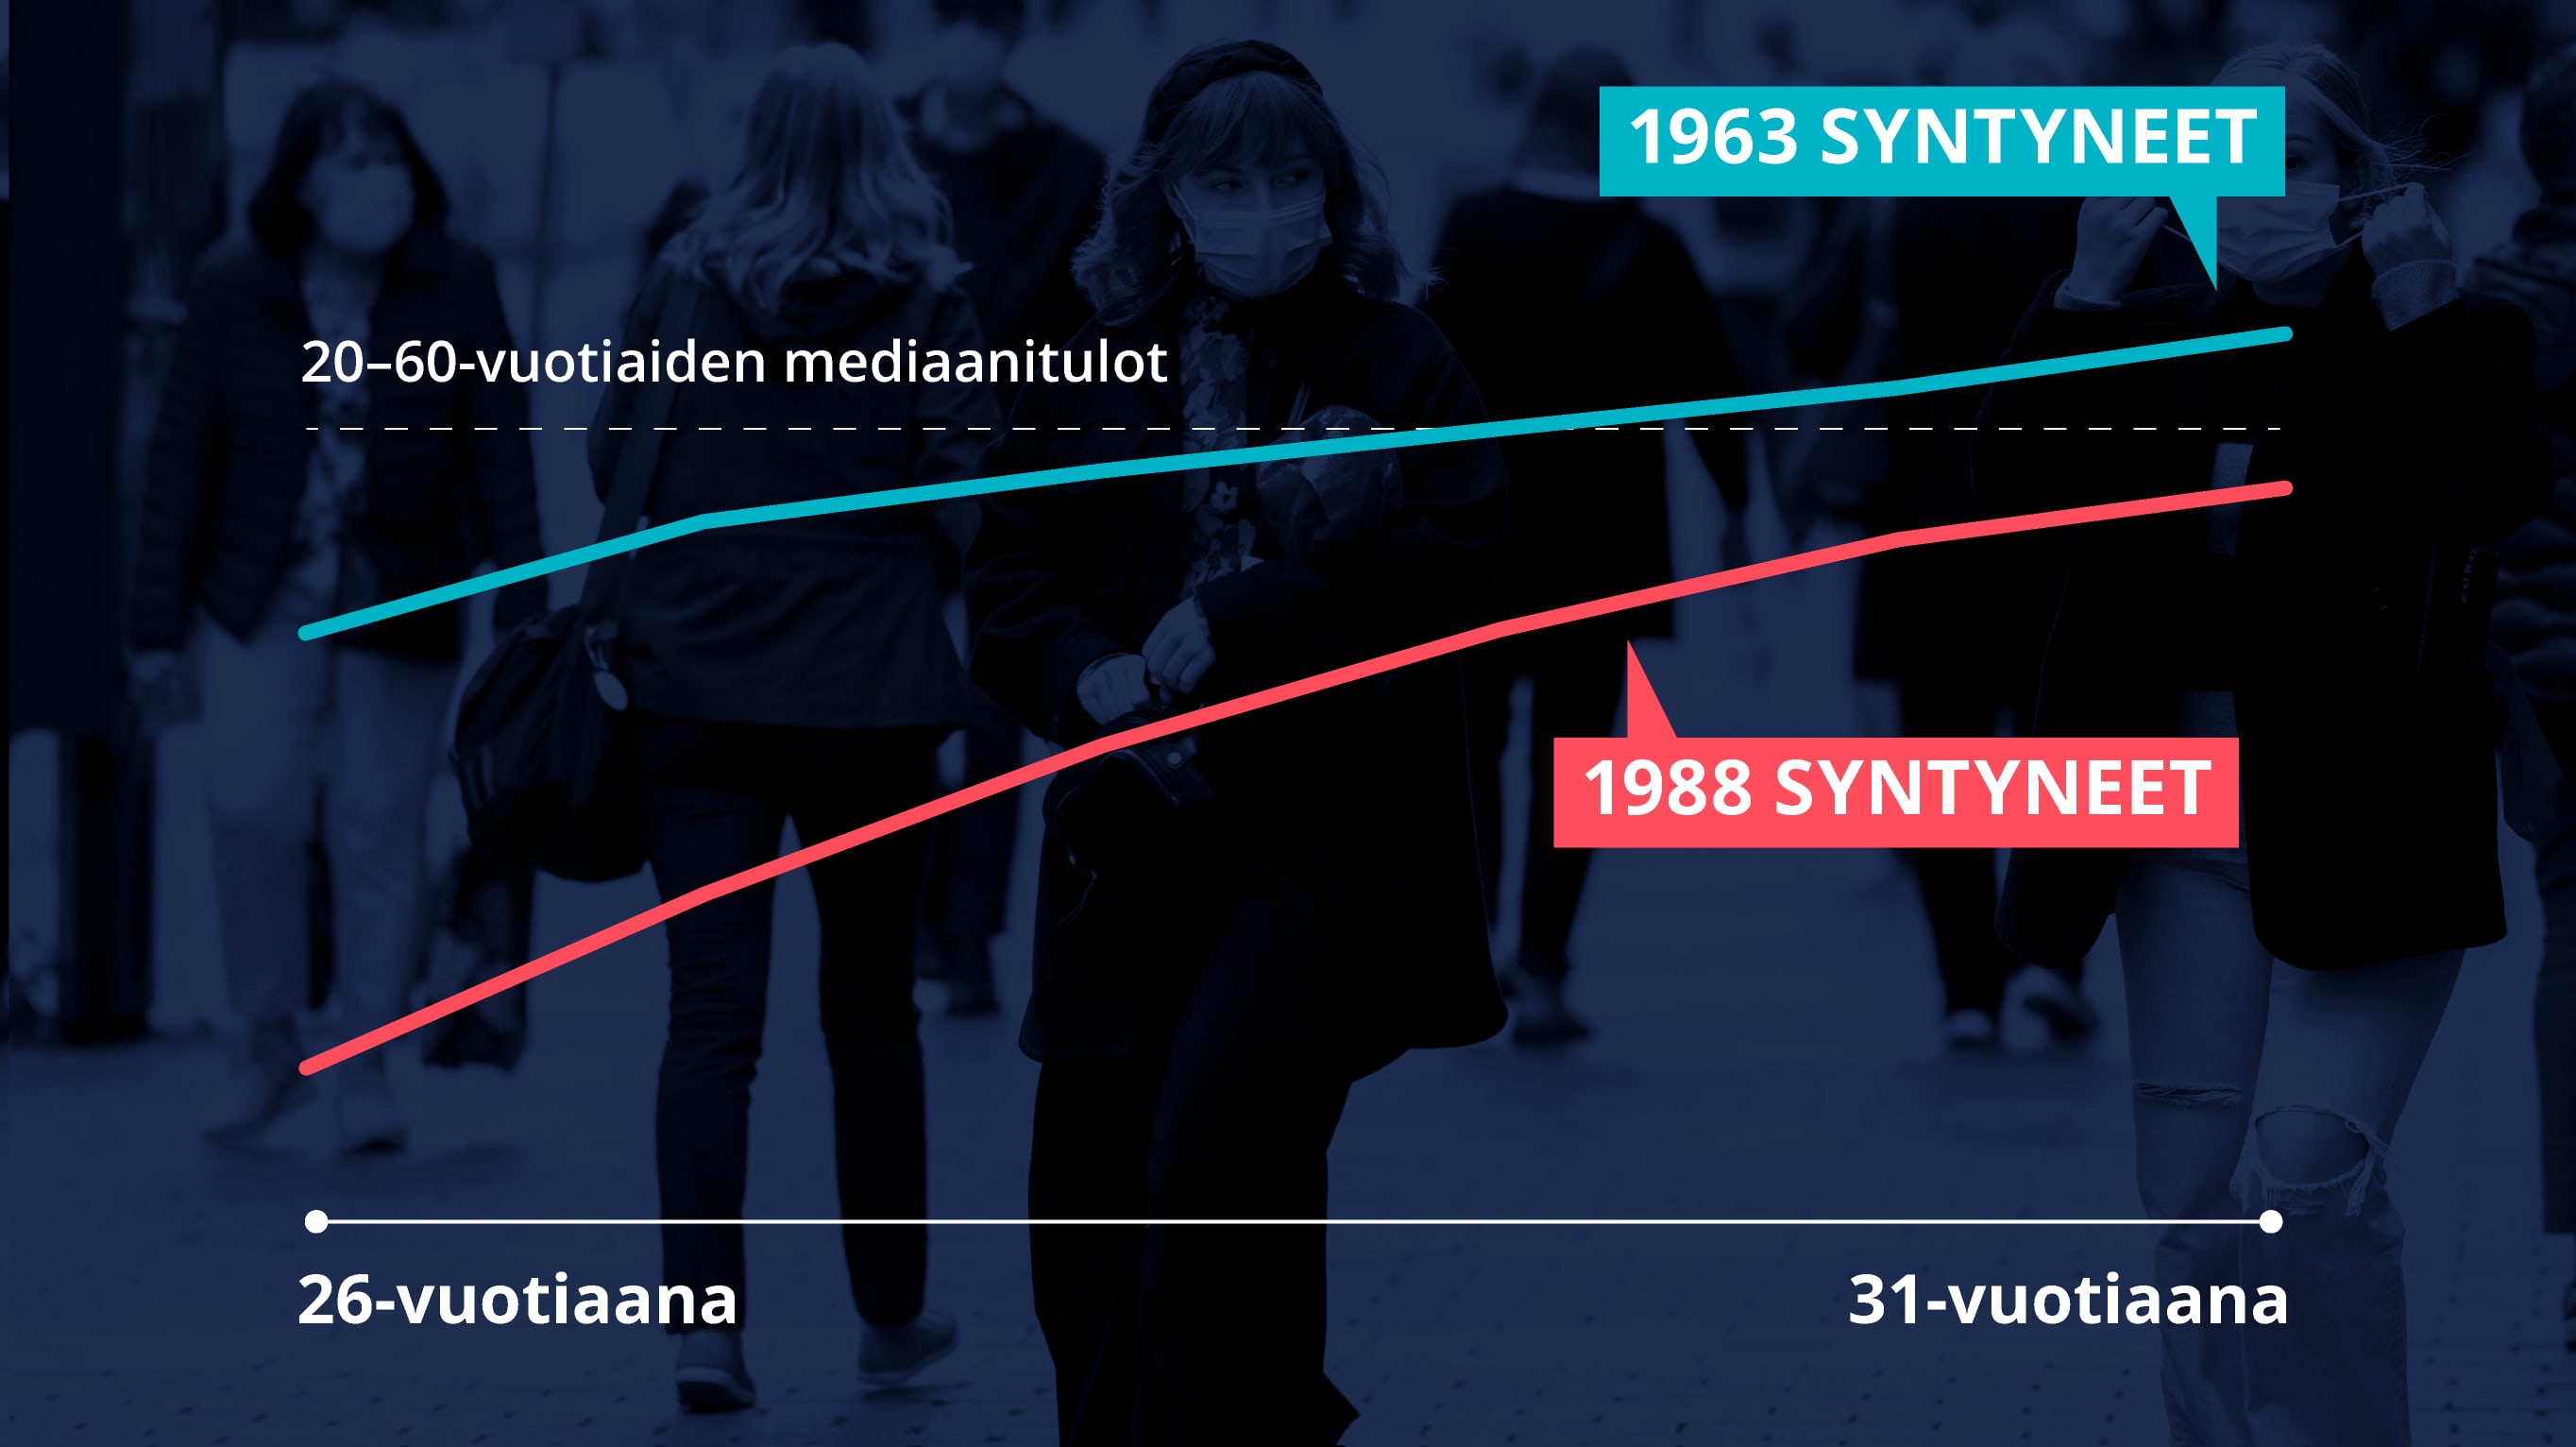 Grafiikka näyttää vuonna 1963 ja 1988 syntyneiden tulojen kehityksen.